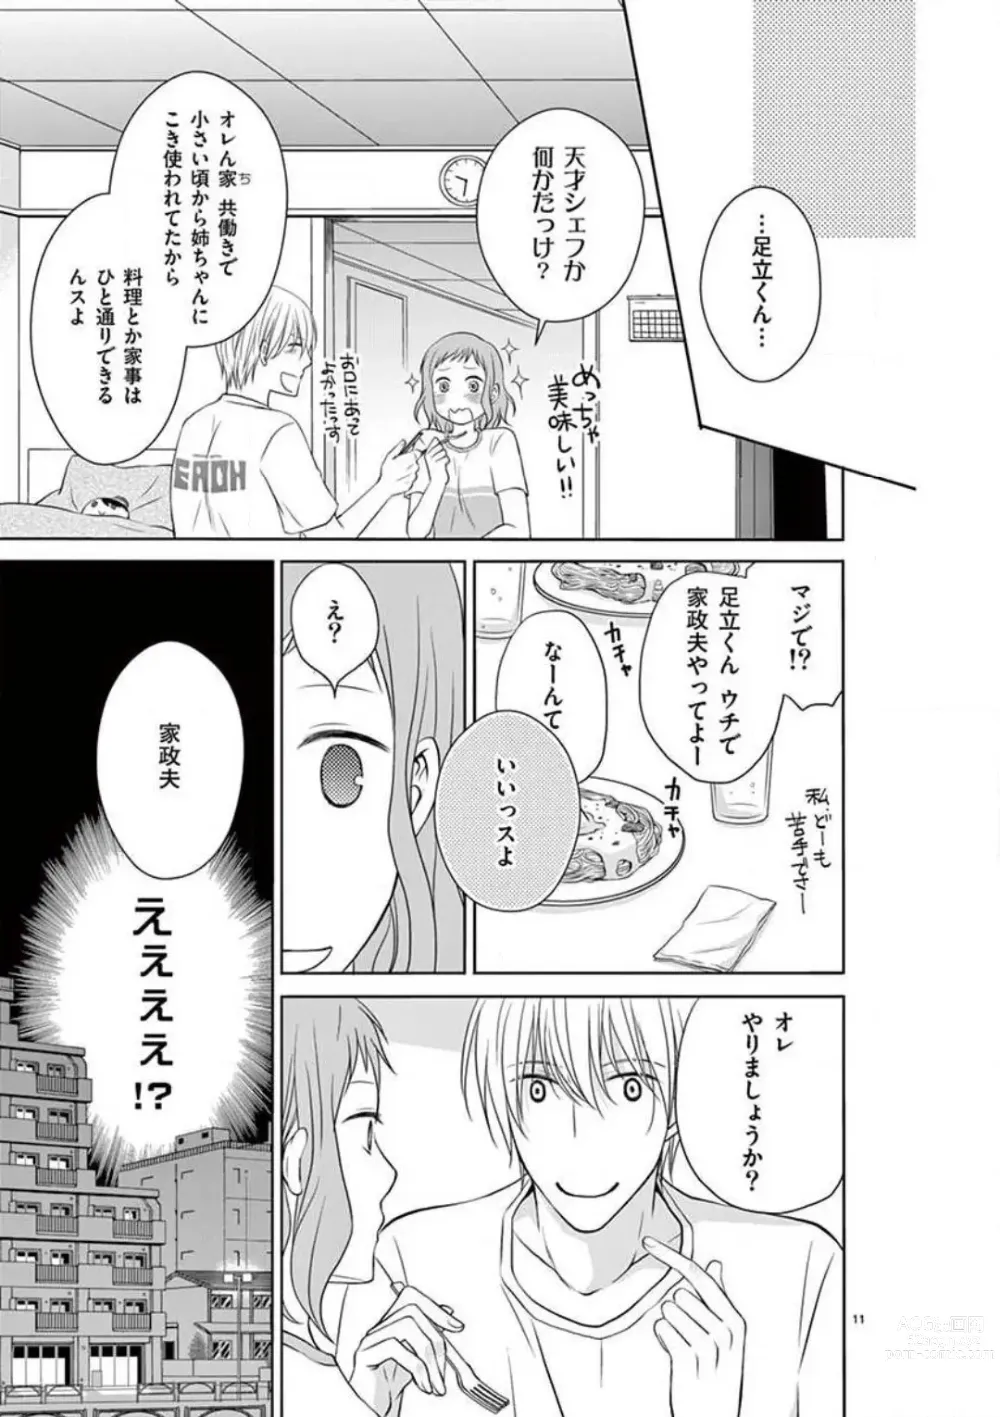 Page 11 of manga Senpai Gentei no Kedamonodesukara 〜 Kanshō-yō Ikemen no Hotobashiru Aijō〜 1-4